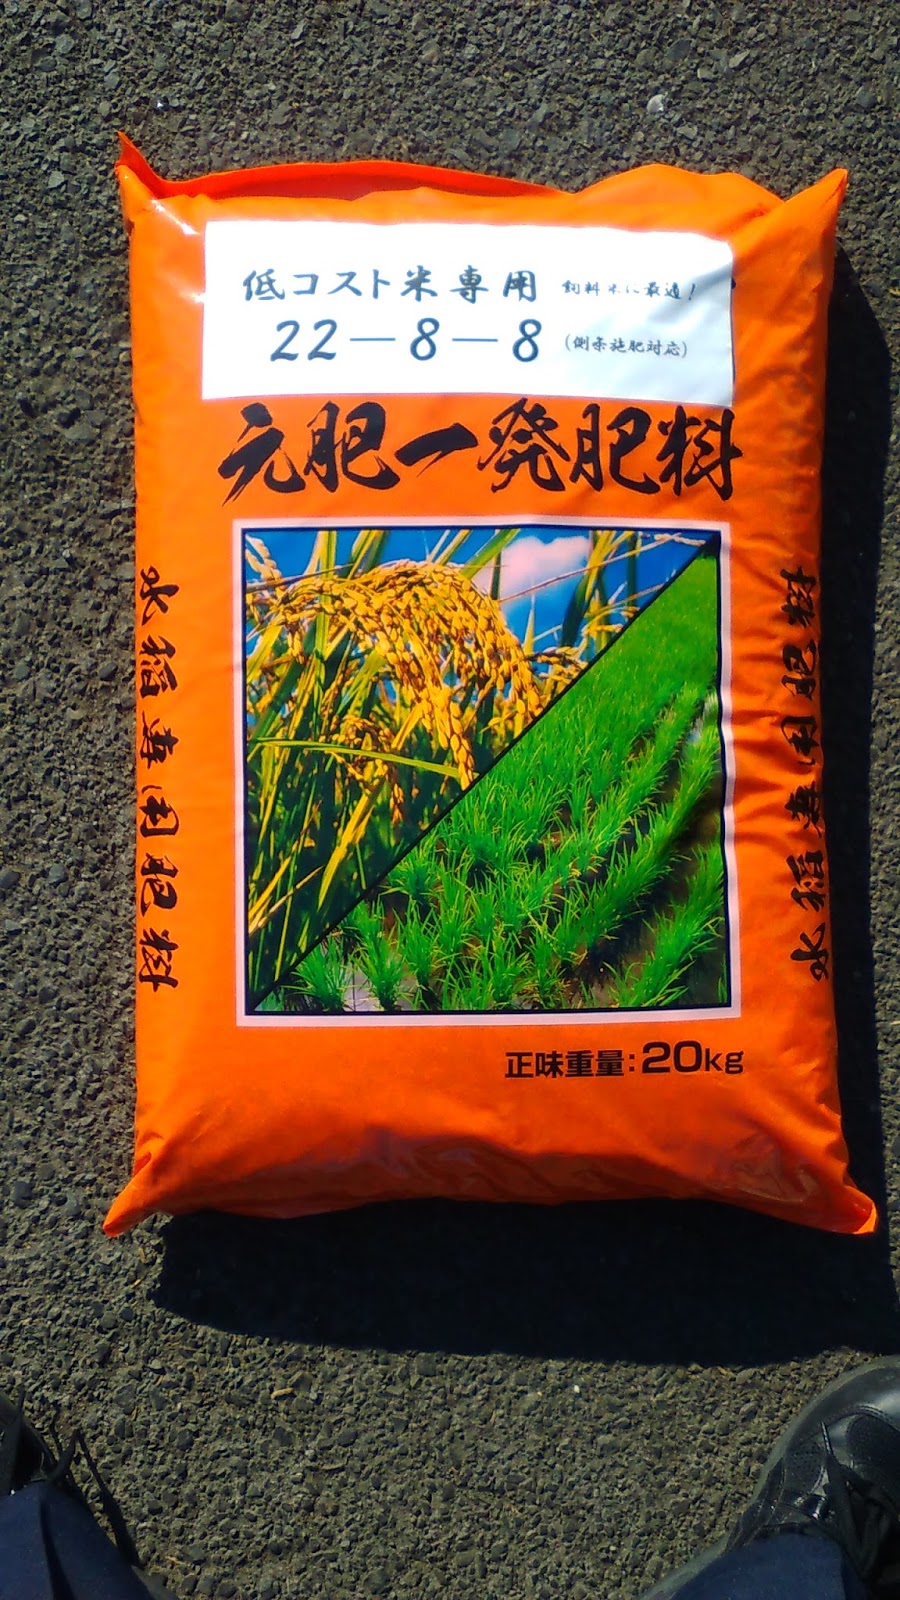 農業用品販売・農業支援のグラントマト株式会社: 低コスト米元肥一発肥料